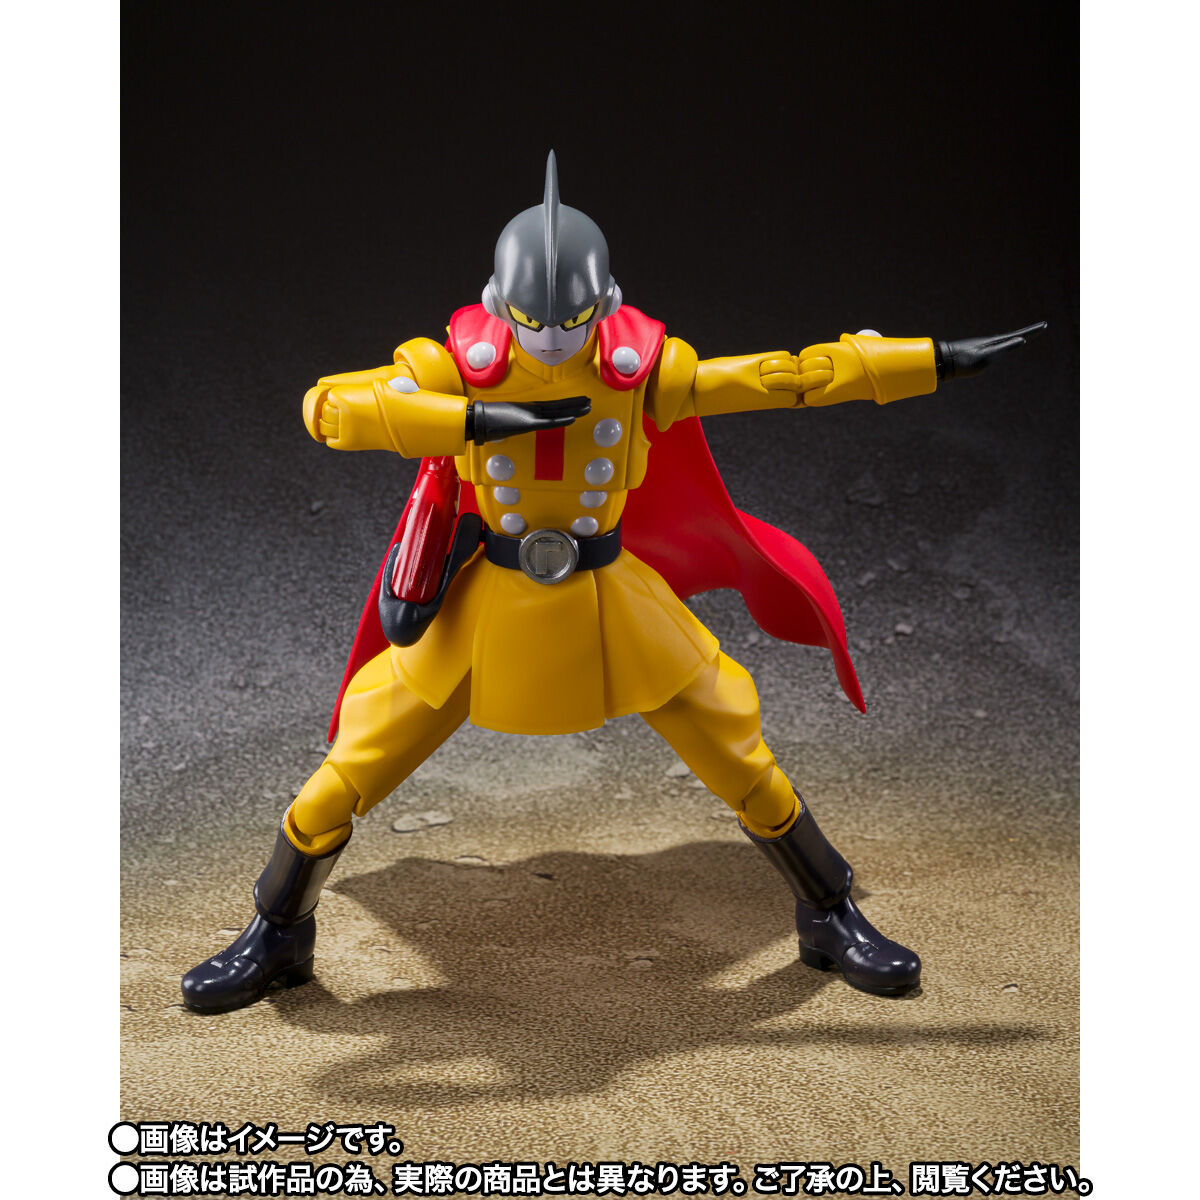 【限定販売】S.H.Figuarts『ガンマ1号』ドラゴンボール超 スーパーヒーロー 可動フィギュア-003